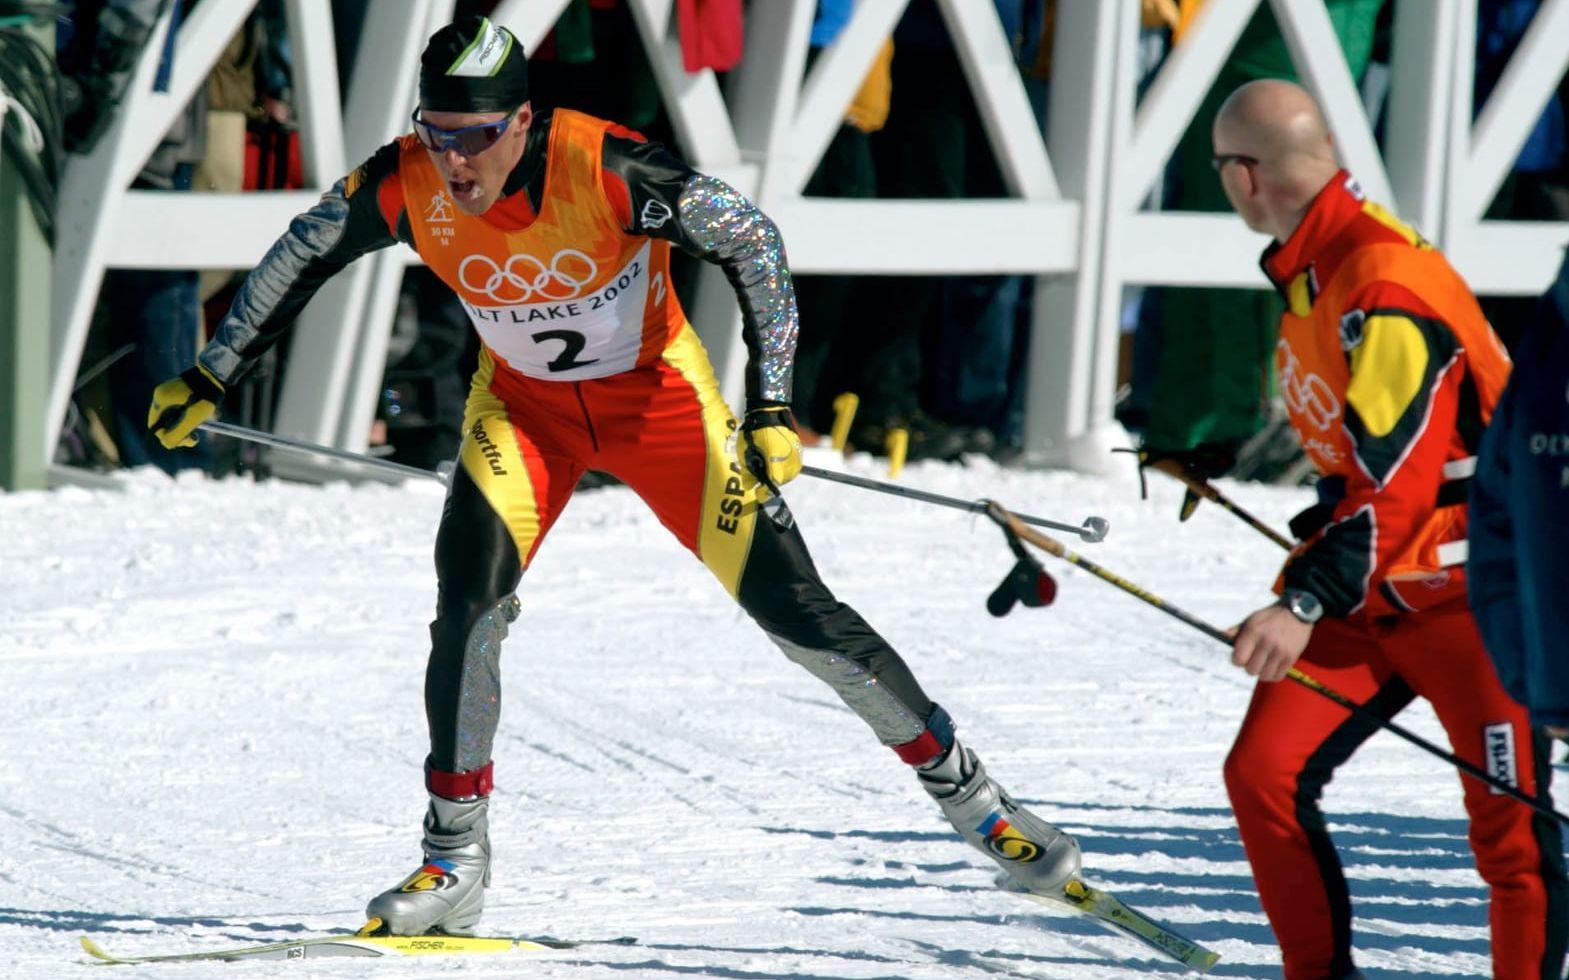 Mülegg vann tre individuella guld i OS, och uppvisningen på tremilen slår det mesta skidpubliken har sett. Foto: TT